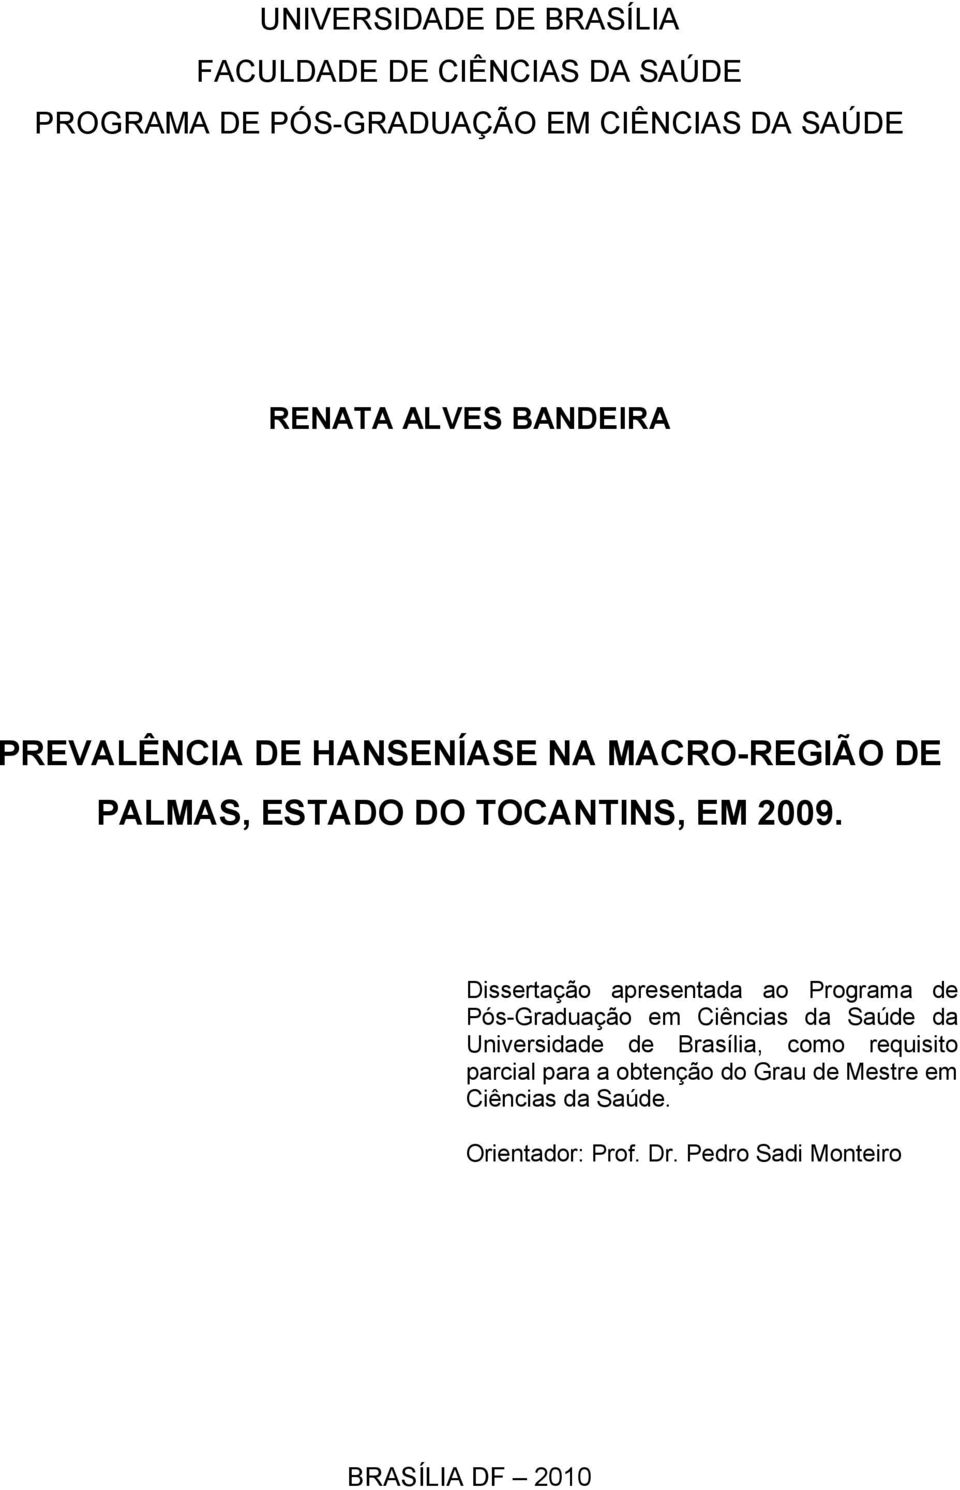 Dissertação apresentada ao Programa de Pós-Graduação em Ciências da Saúde da Universidade de Brasília, como